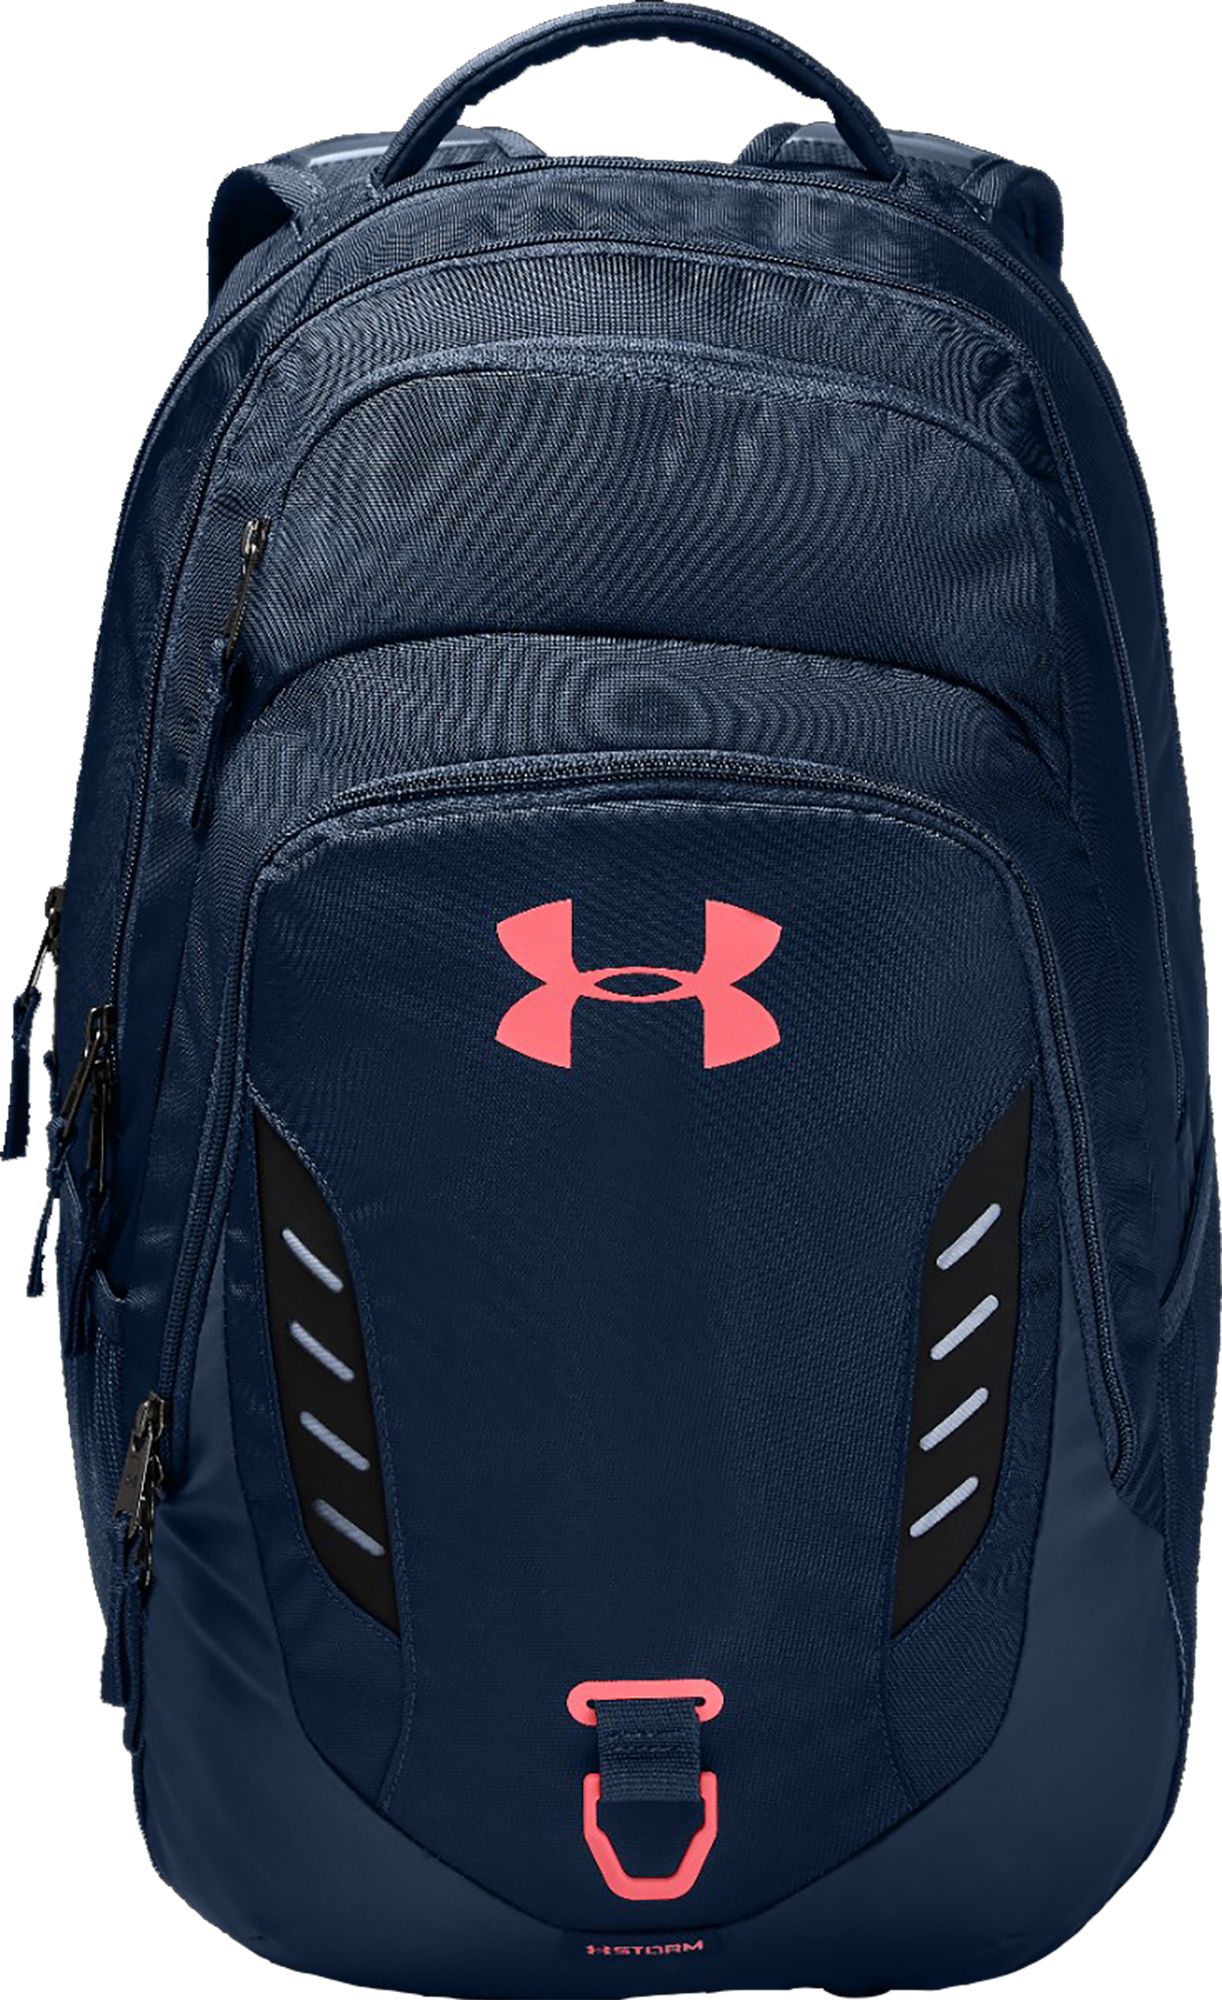 under armor backpacks for school